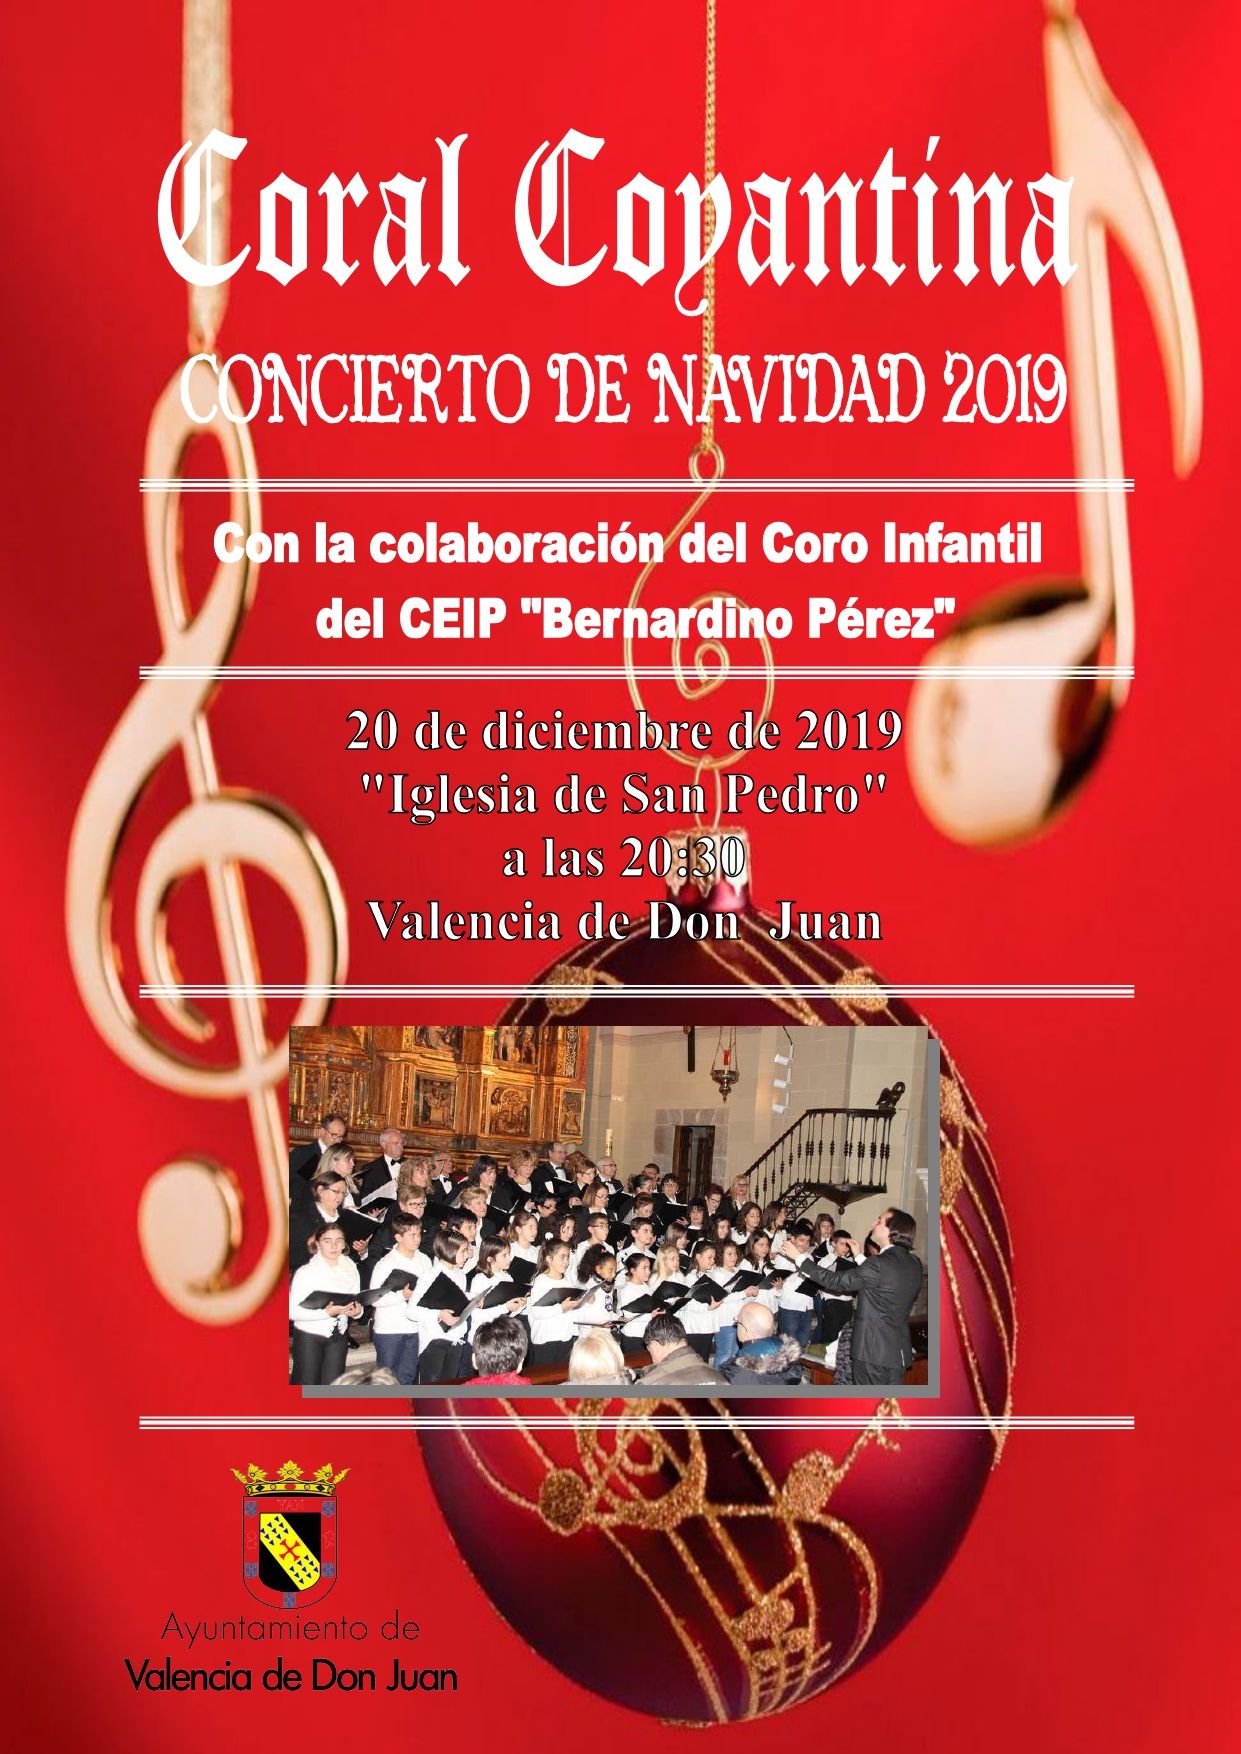 Concierto de la Coral Coyantina y el Coro Infantil «Bernardino Pérez»